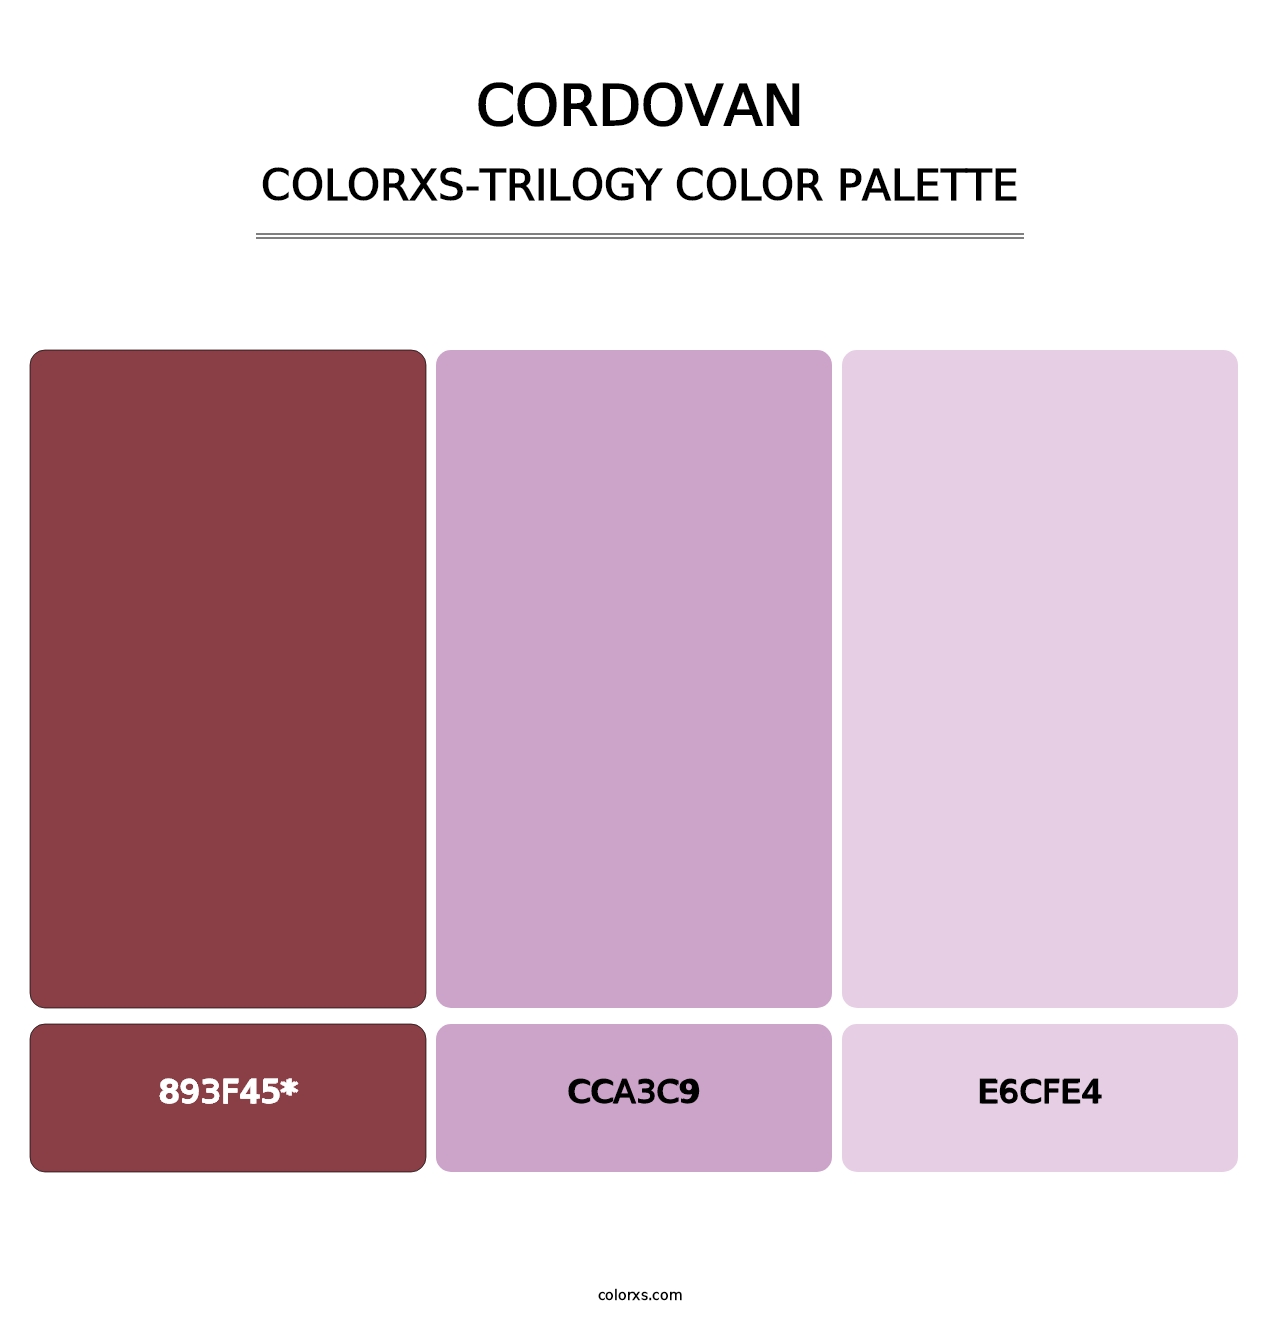 Cordovan - Colorxs Trilogy Palette